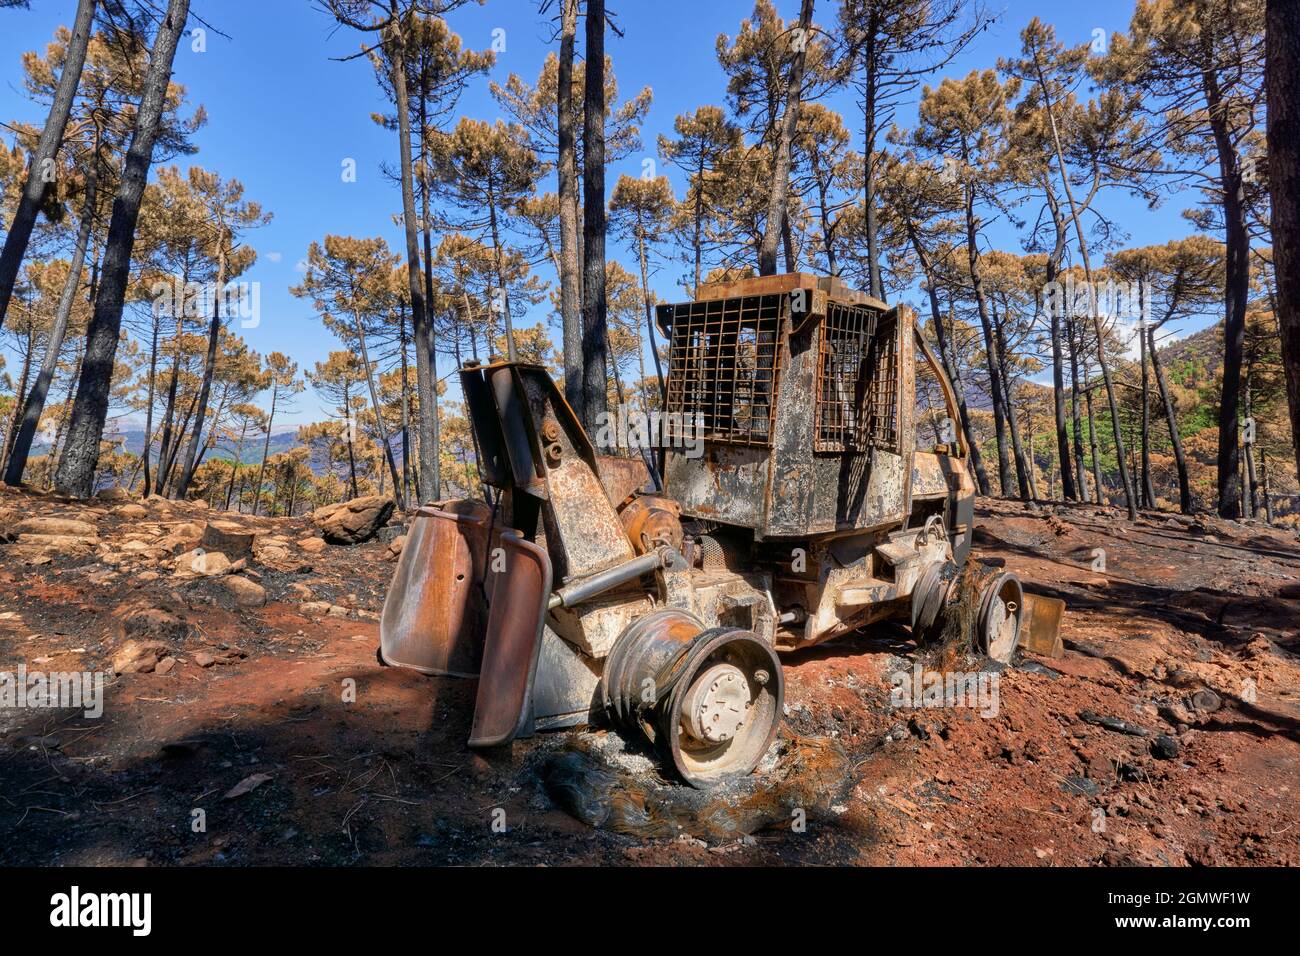 Des machines lourdes brûlées par le feu dans le feu de Jubrique près de la Sierra Bermaja dans la vallée de Genal, Malaga. Andalousie, Espagne. Septembre 2021 Banque D'Images